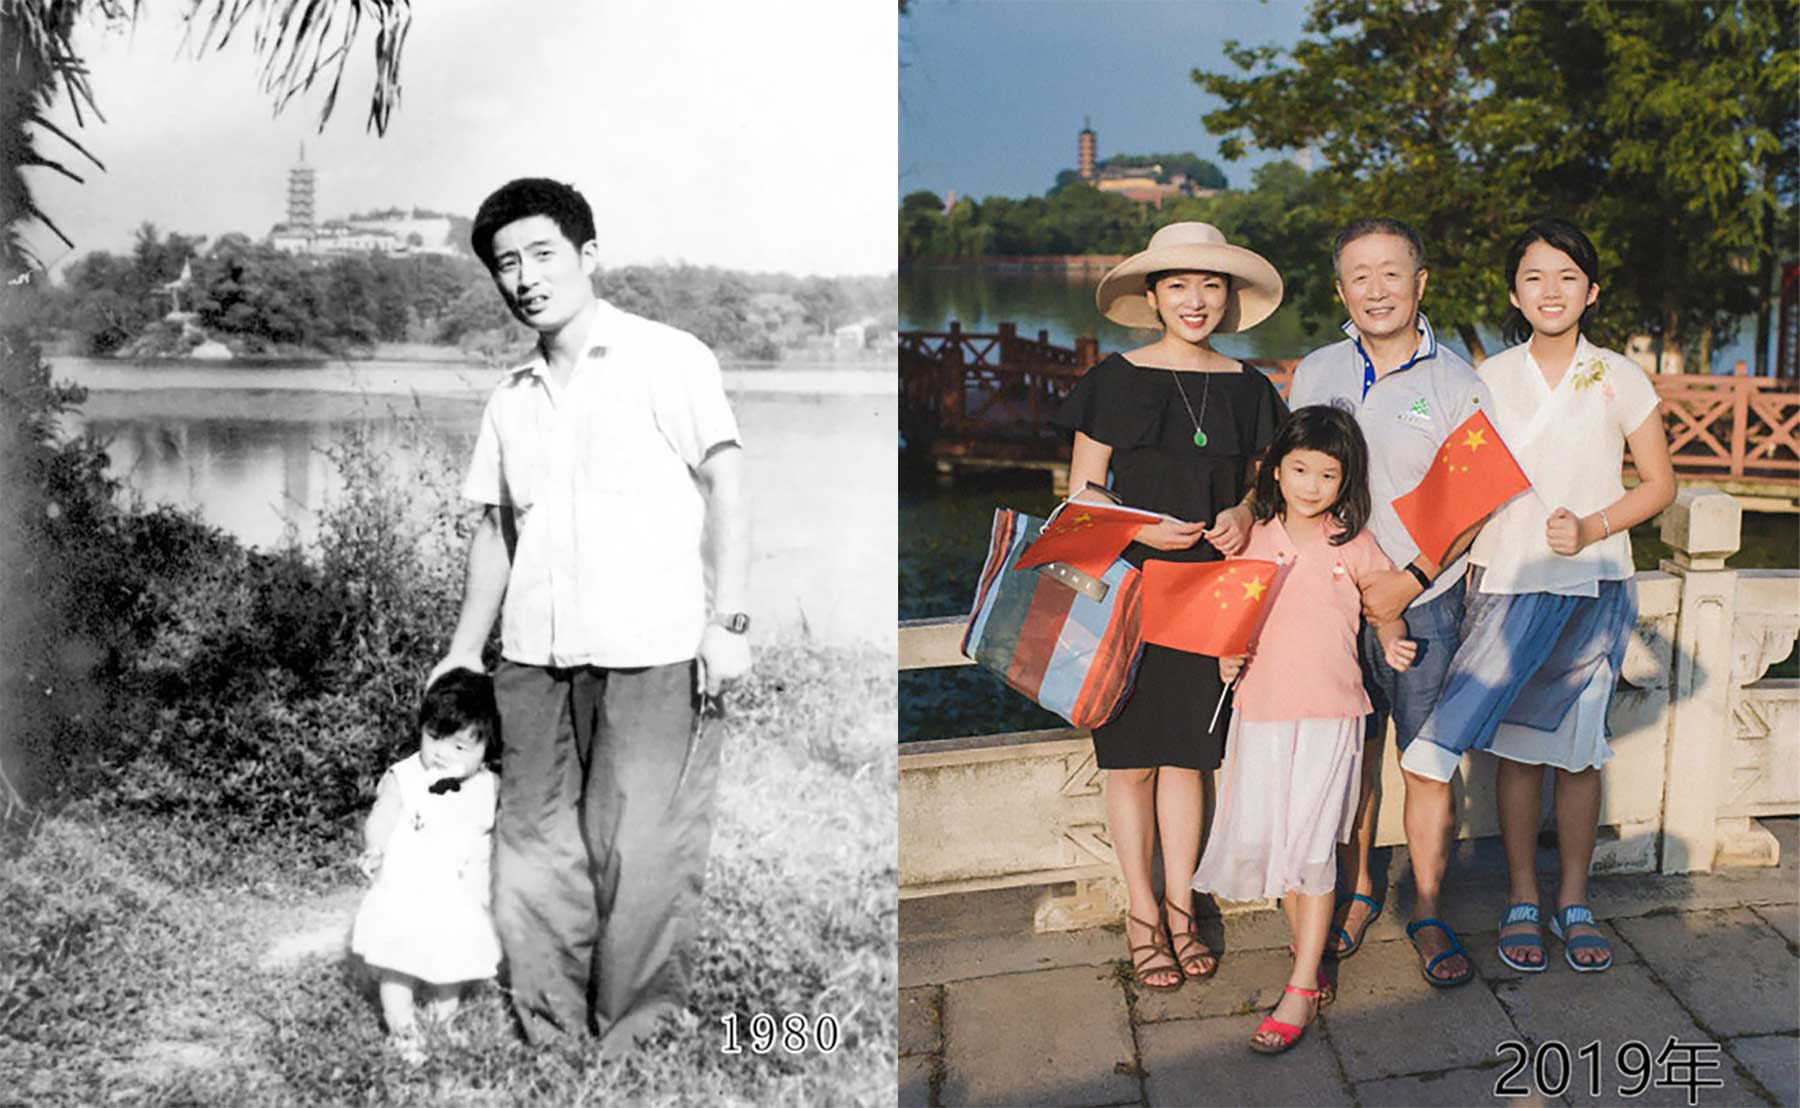 Vater und Tochter machen seit 1980 jährlich ein Foto am gleichen Ort